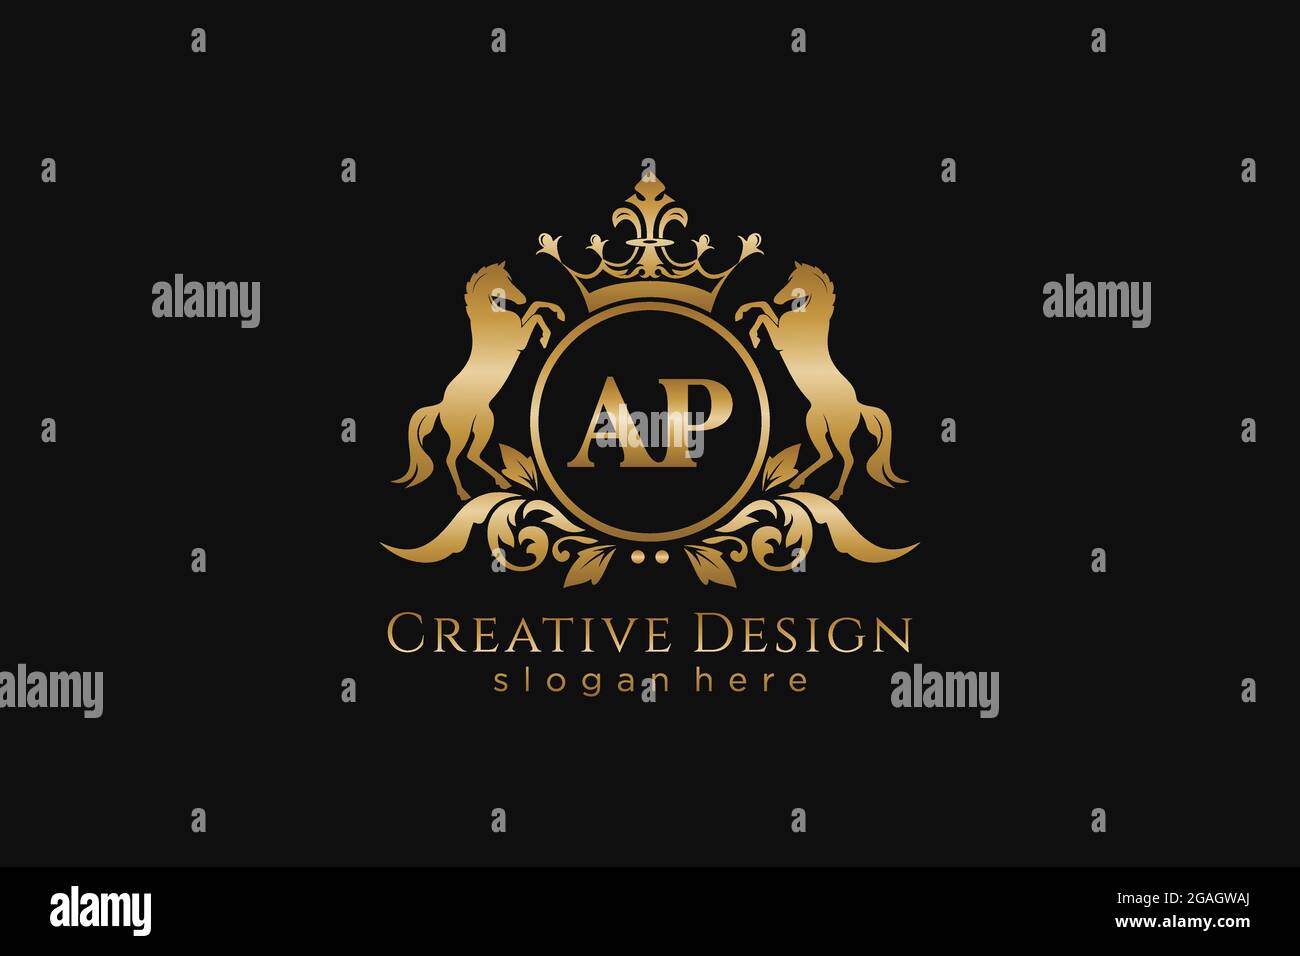 AP Retro goldenes Wappen mit Kreis und zwei Pferden, Badge-Vorlage mit Rollen und königlicher Krone - perfekt für luxuriöse Branding-Projekte Stock Vektor